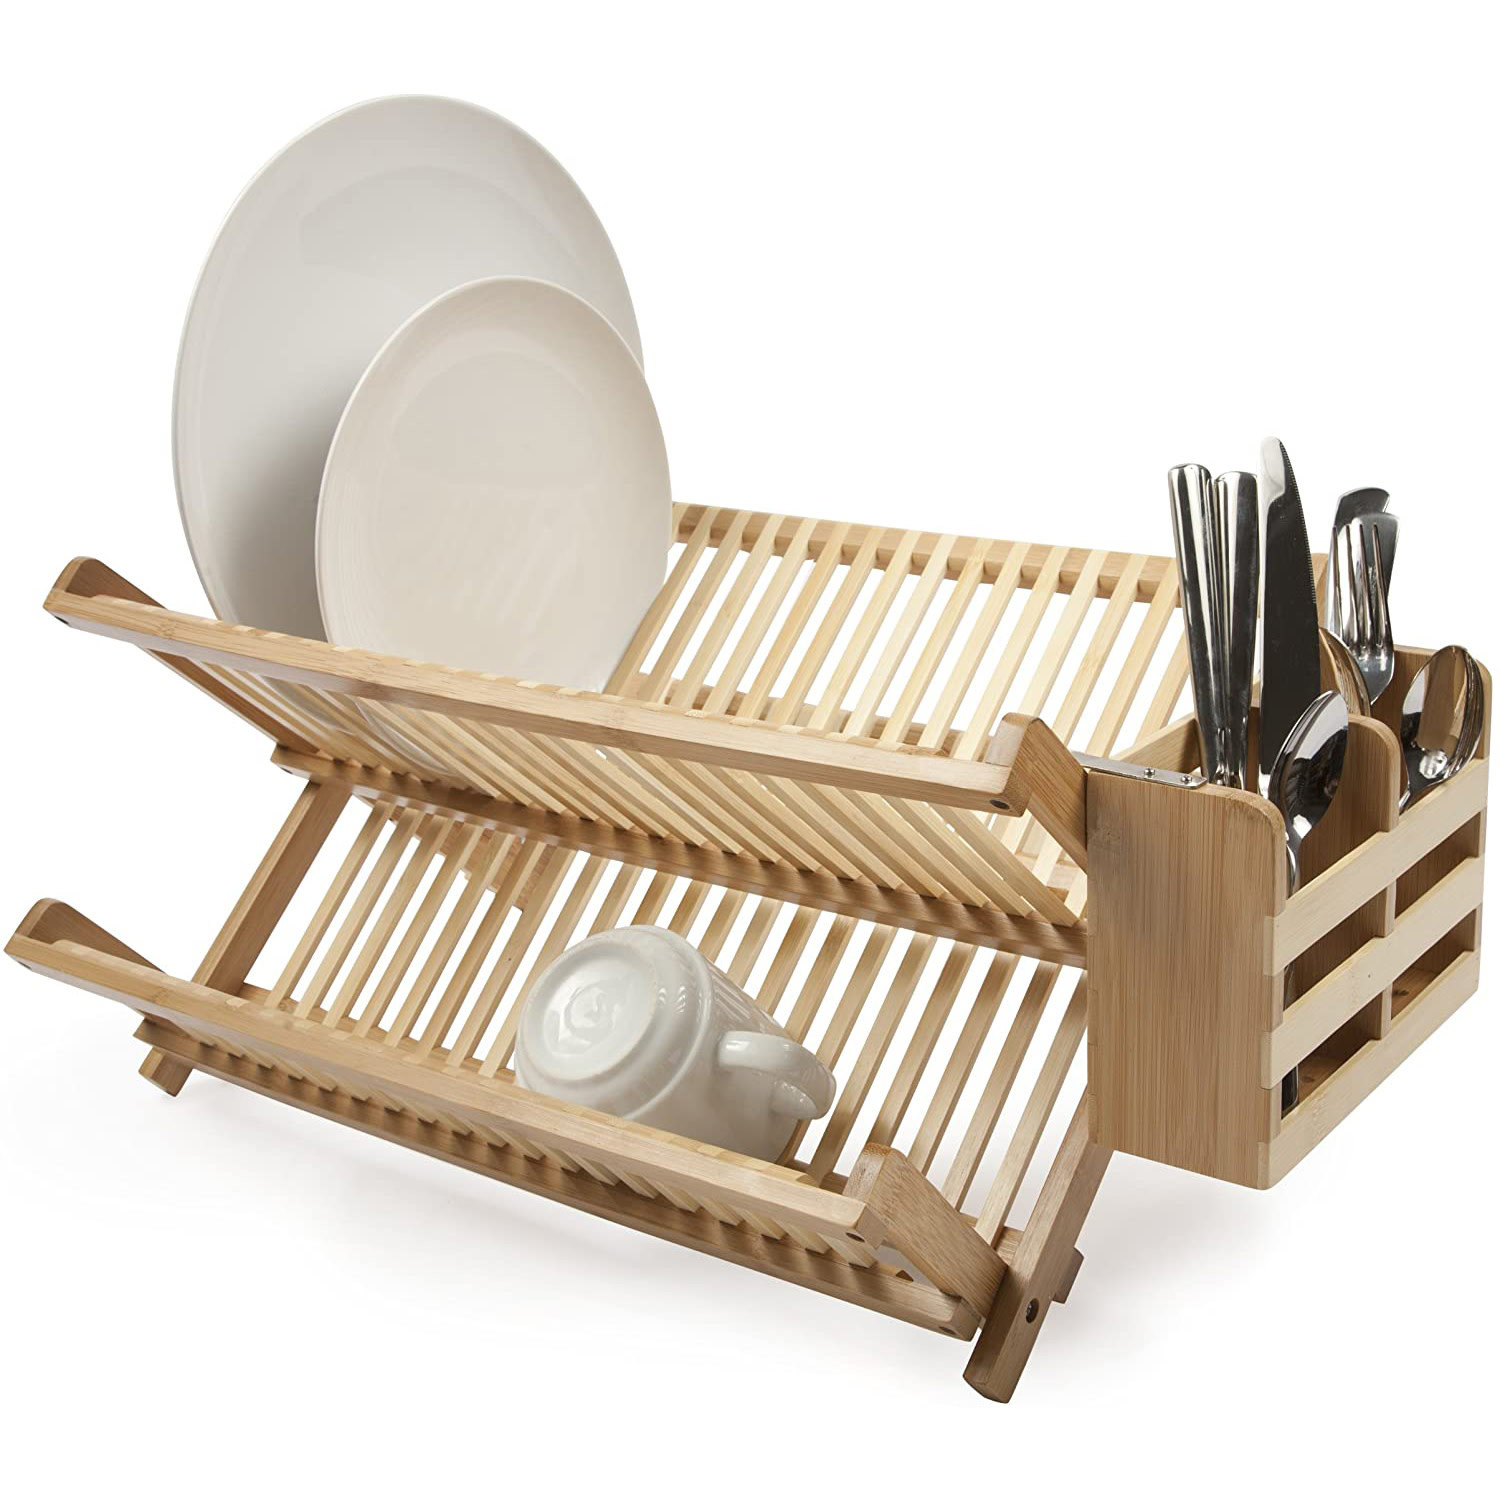 Сушилка для посуды леруа мерлен. Dish Rack сушилка для посуды. Деревянная сушилка для посуды. Деревянная подставка для тарелок. Сушилка для тарелок деревянная.